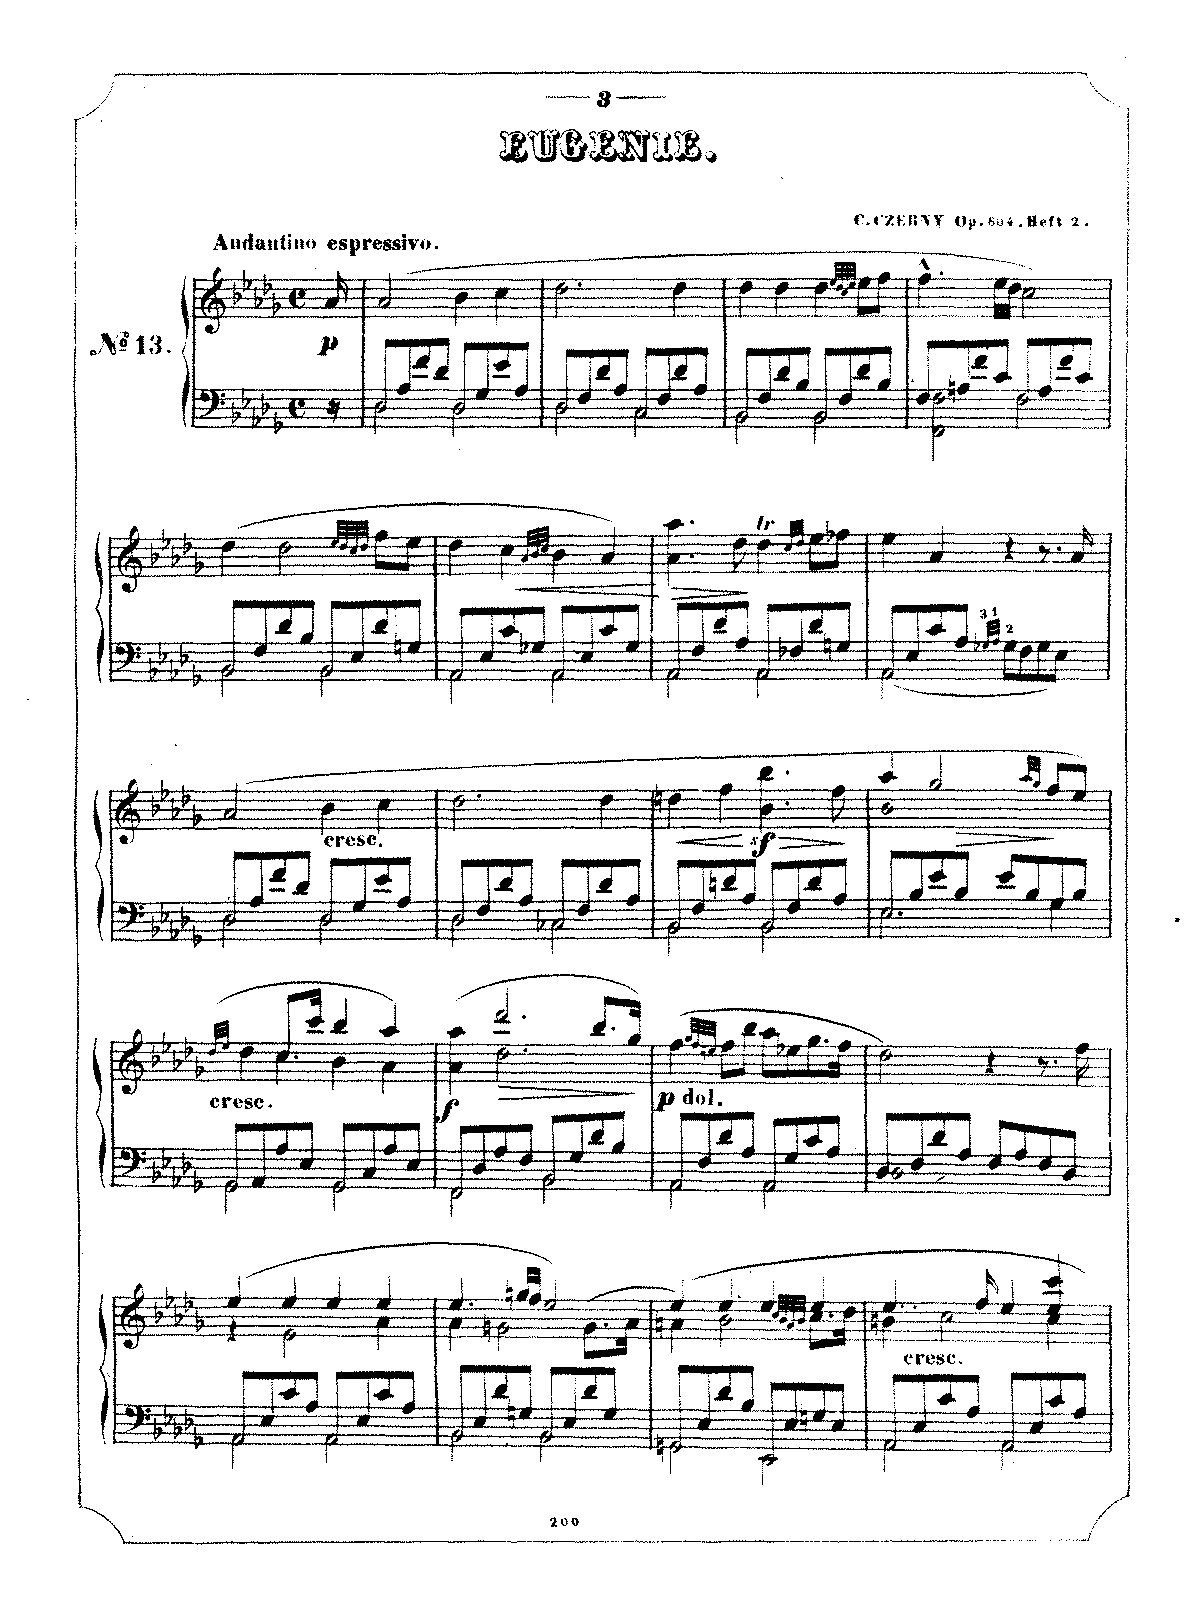 Album élégant des dames pianistes, Op.804 (Czerny, Carl) - IMSLP